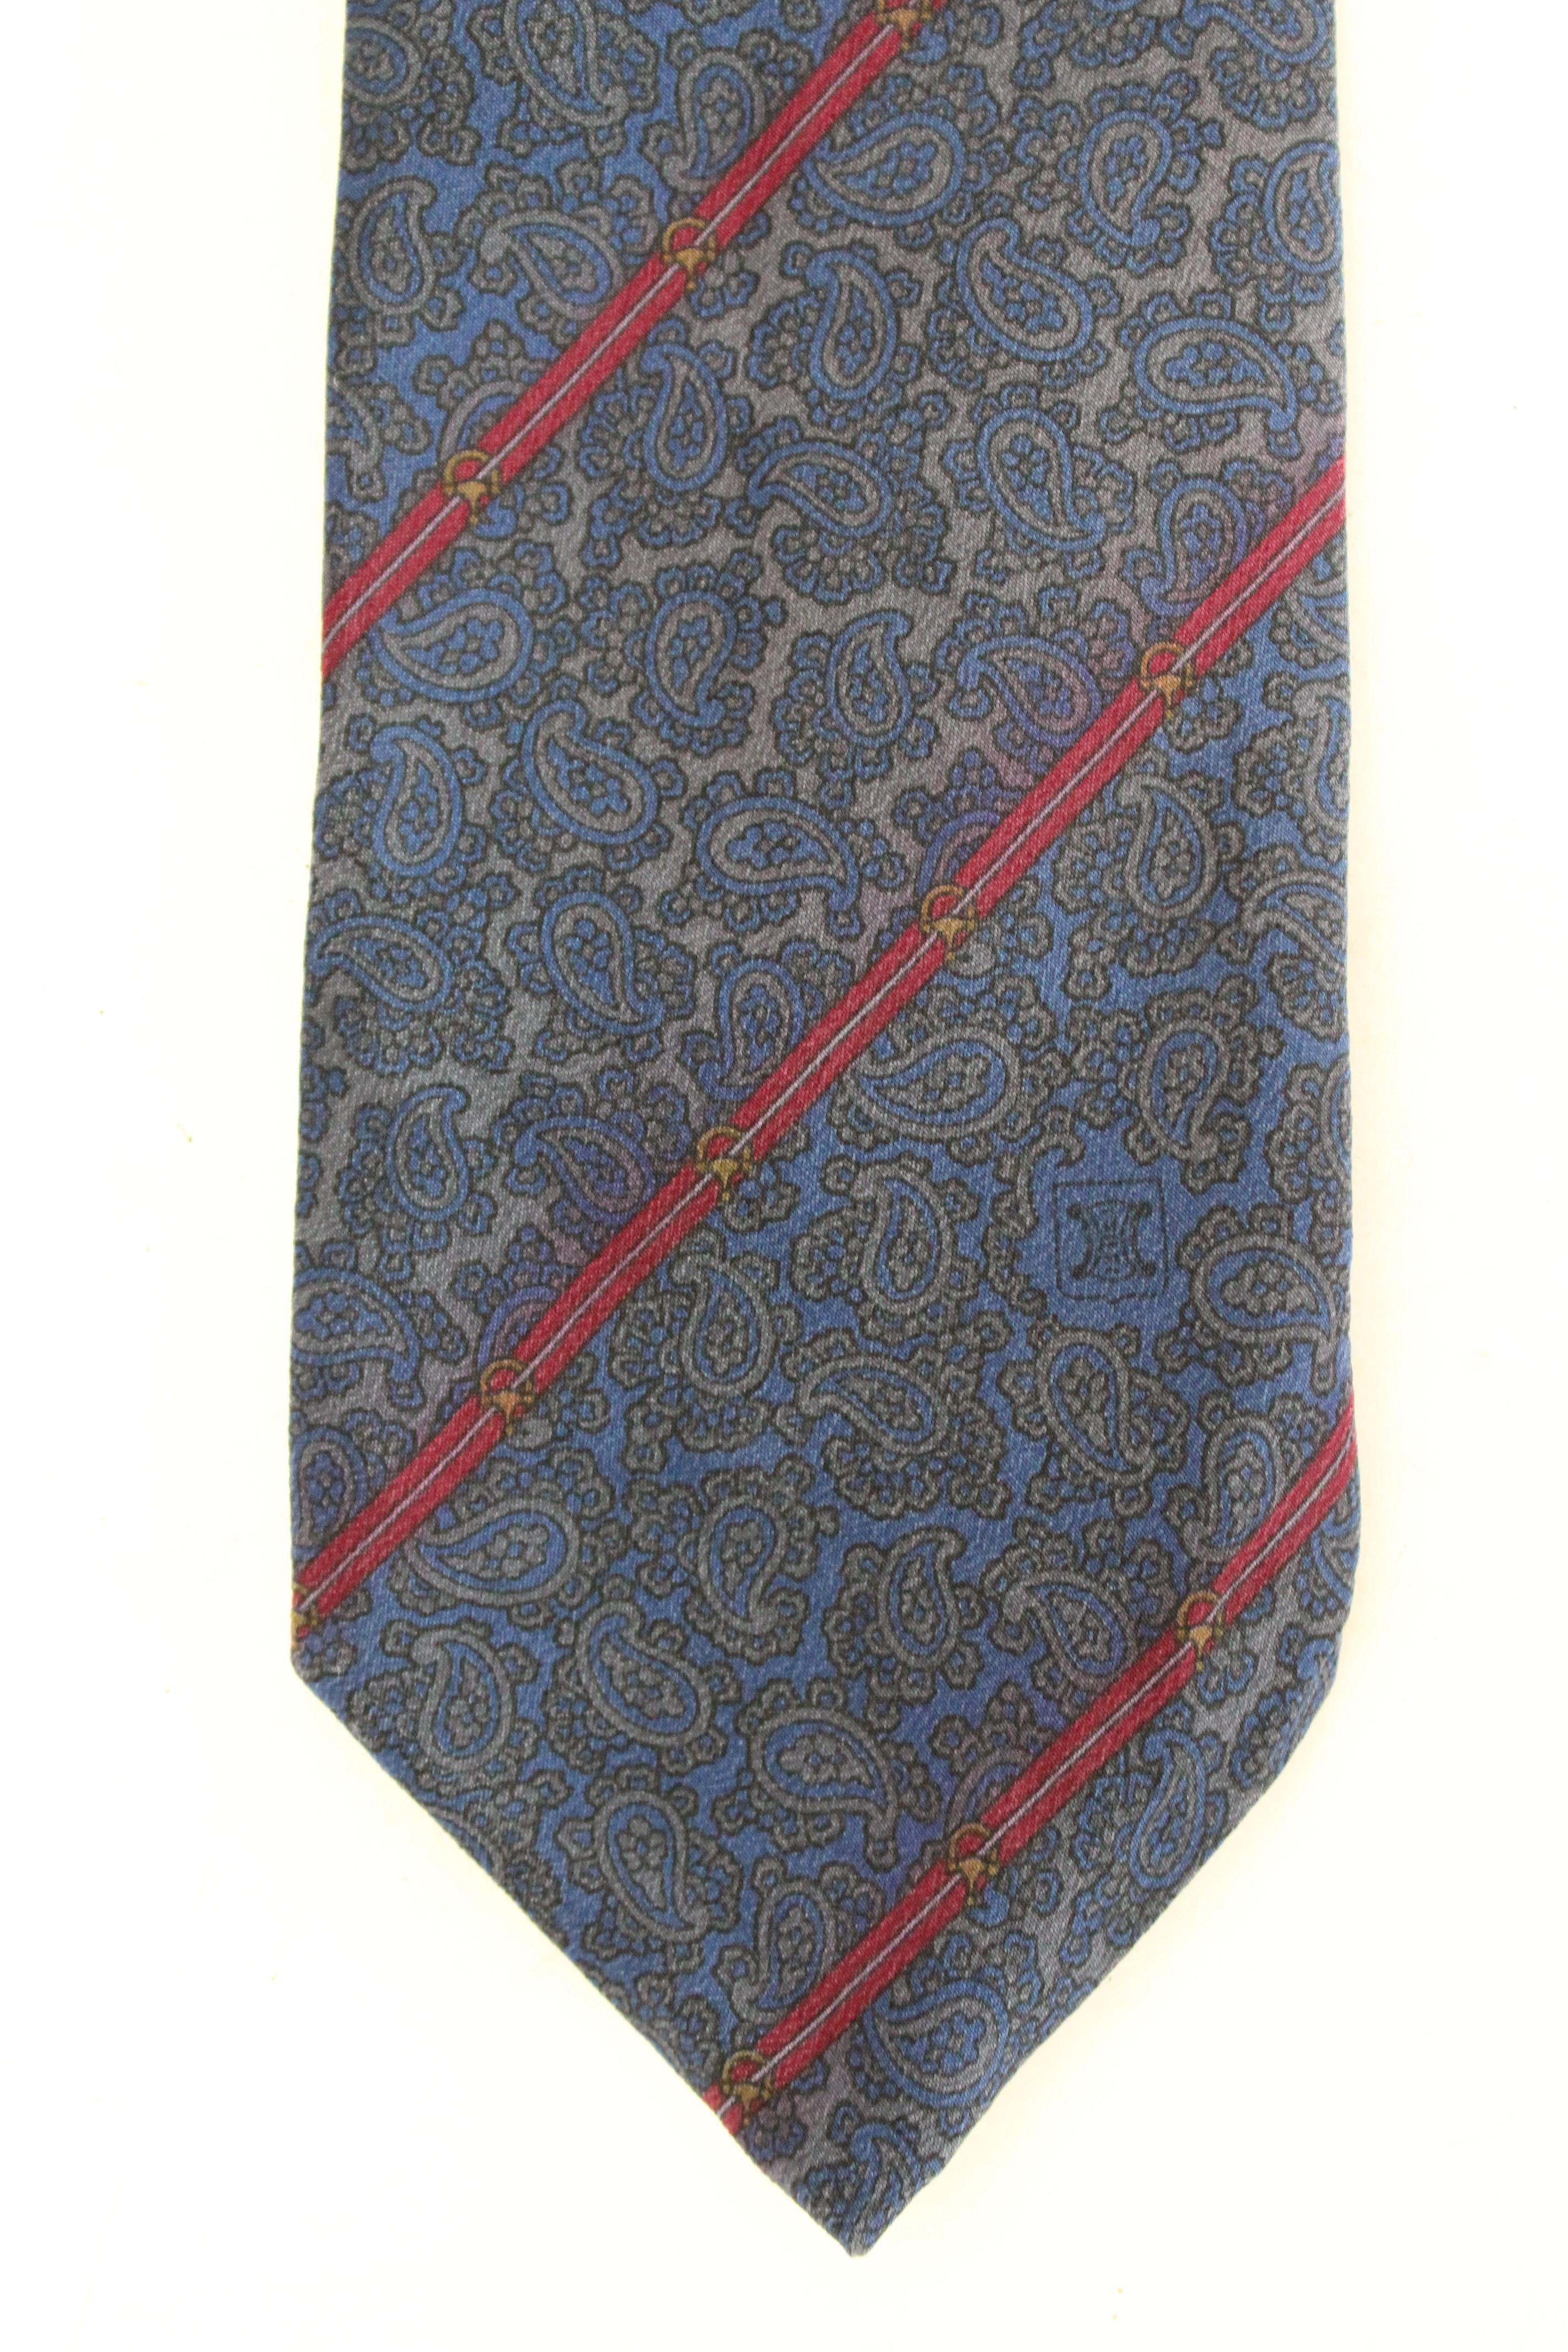 Cravate Celine vintage des années 90. Cravate régimentaire, bleue et rouge avec motif cachemire. tissu 100% soie. Fabriqué en Espagne.

Condition : Excellent

Article utilisé quelques fois, il reste dans son excellent état. Il n'y a aucun signe